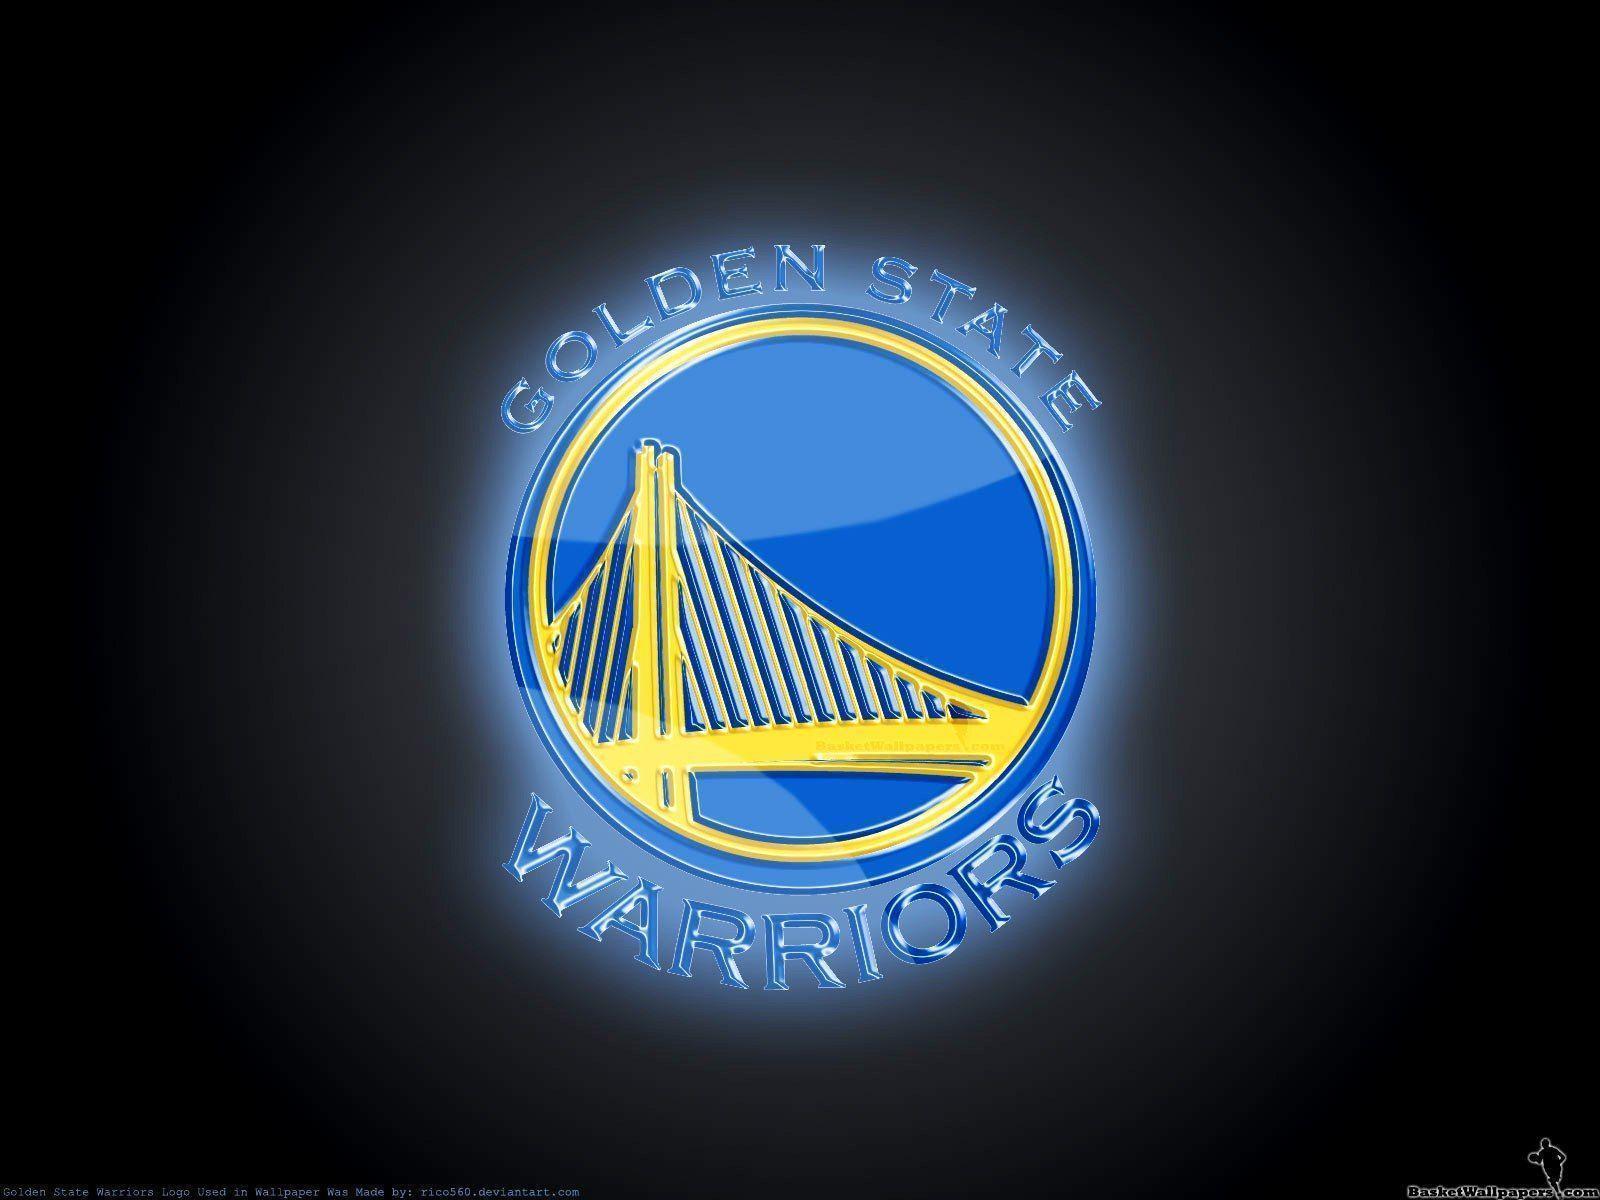 Golden State Warriors Logo Basketball 2015 Golden State Warriors